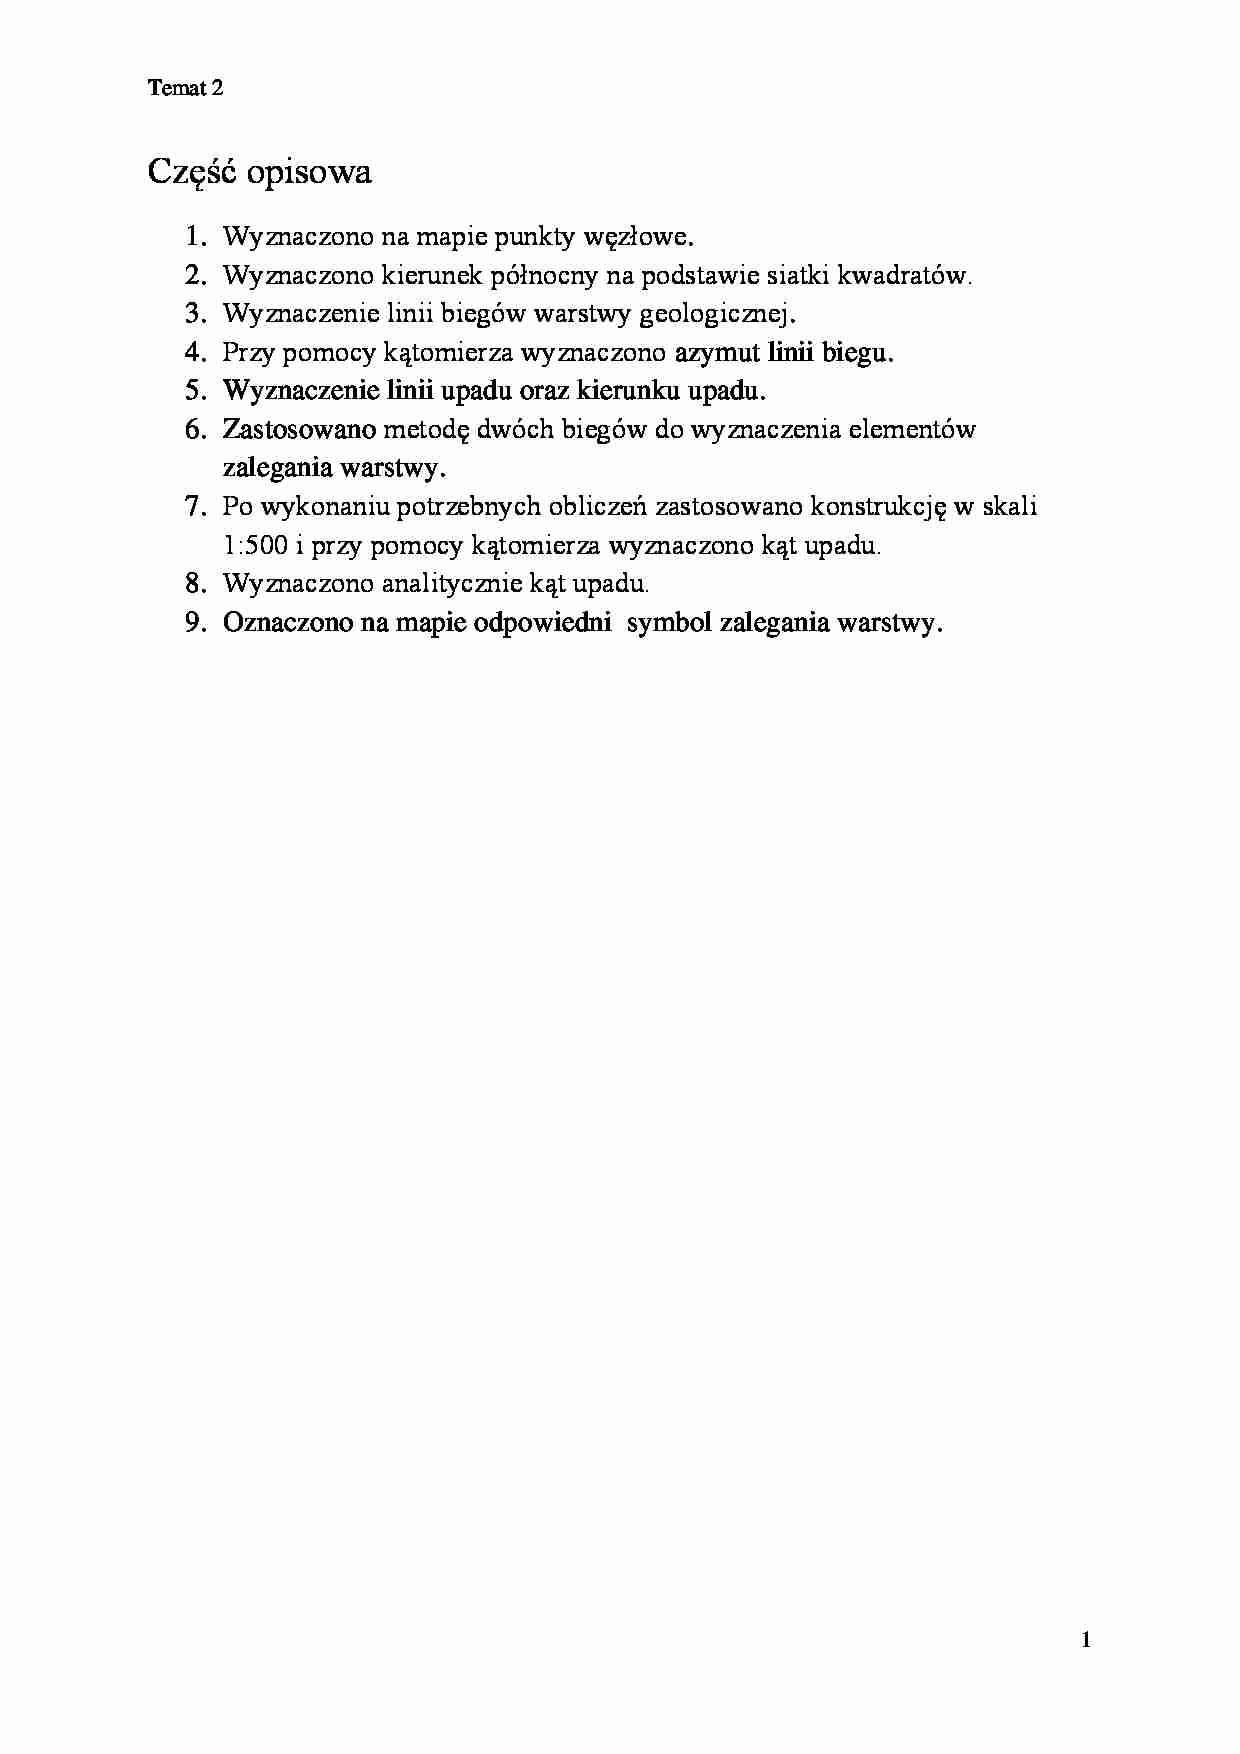 Geotechnika - pytania  - strona 1